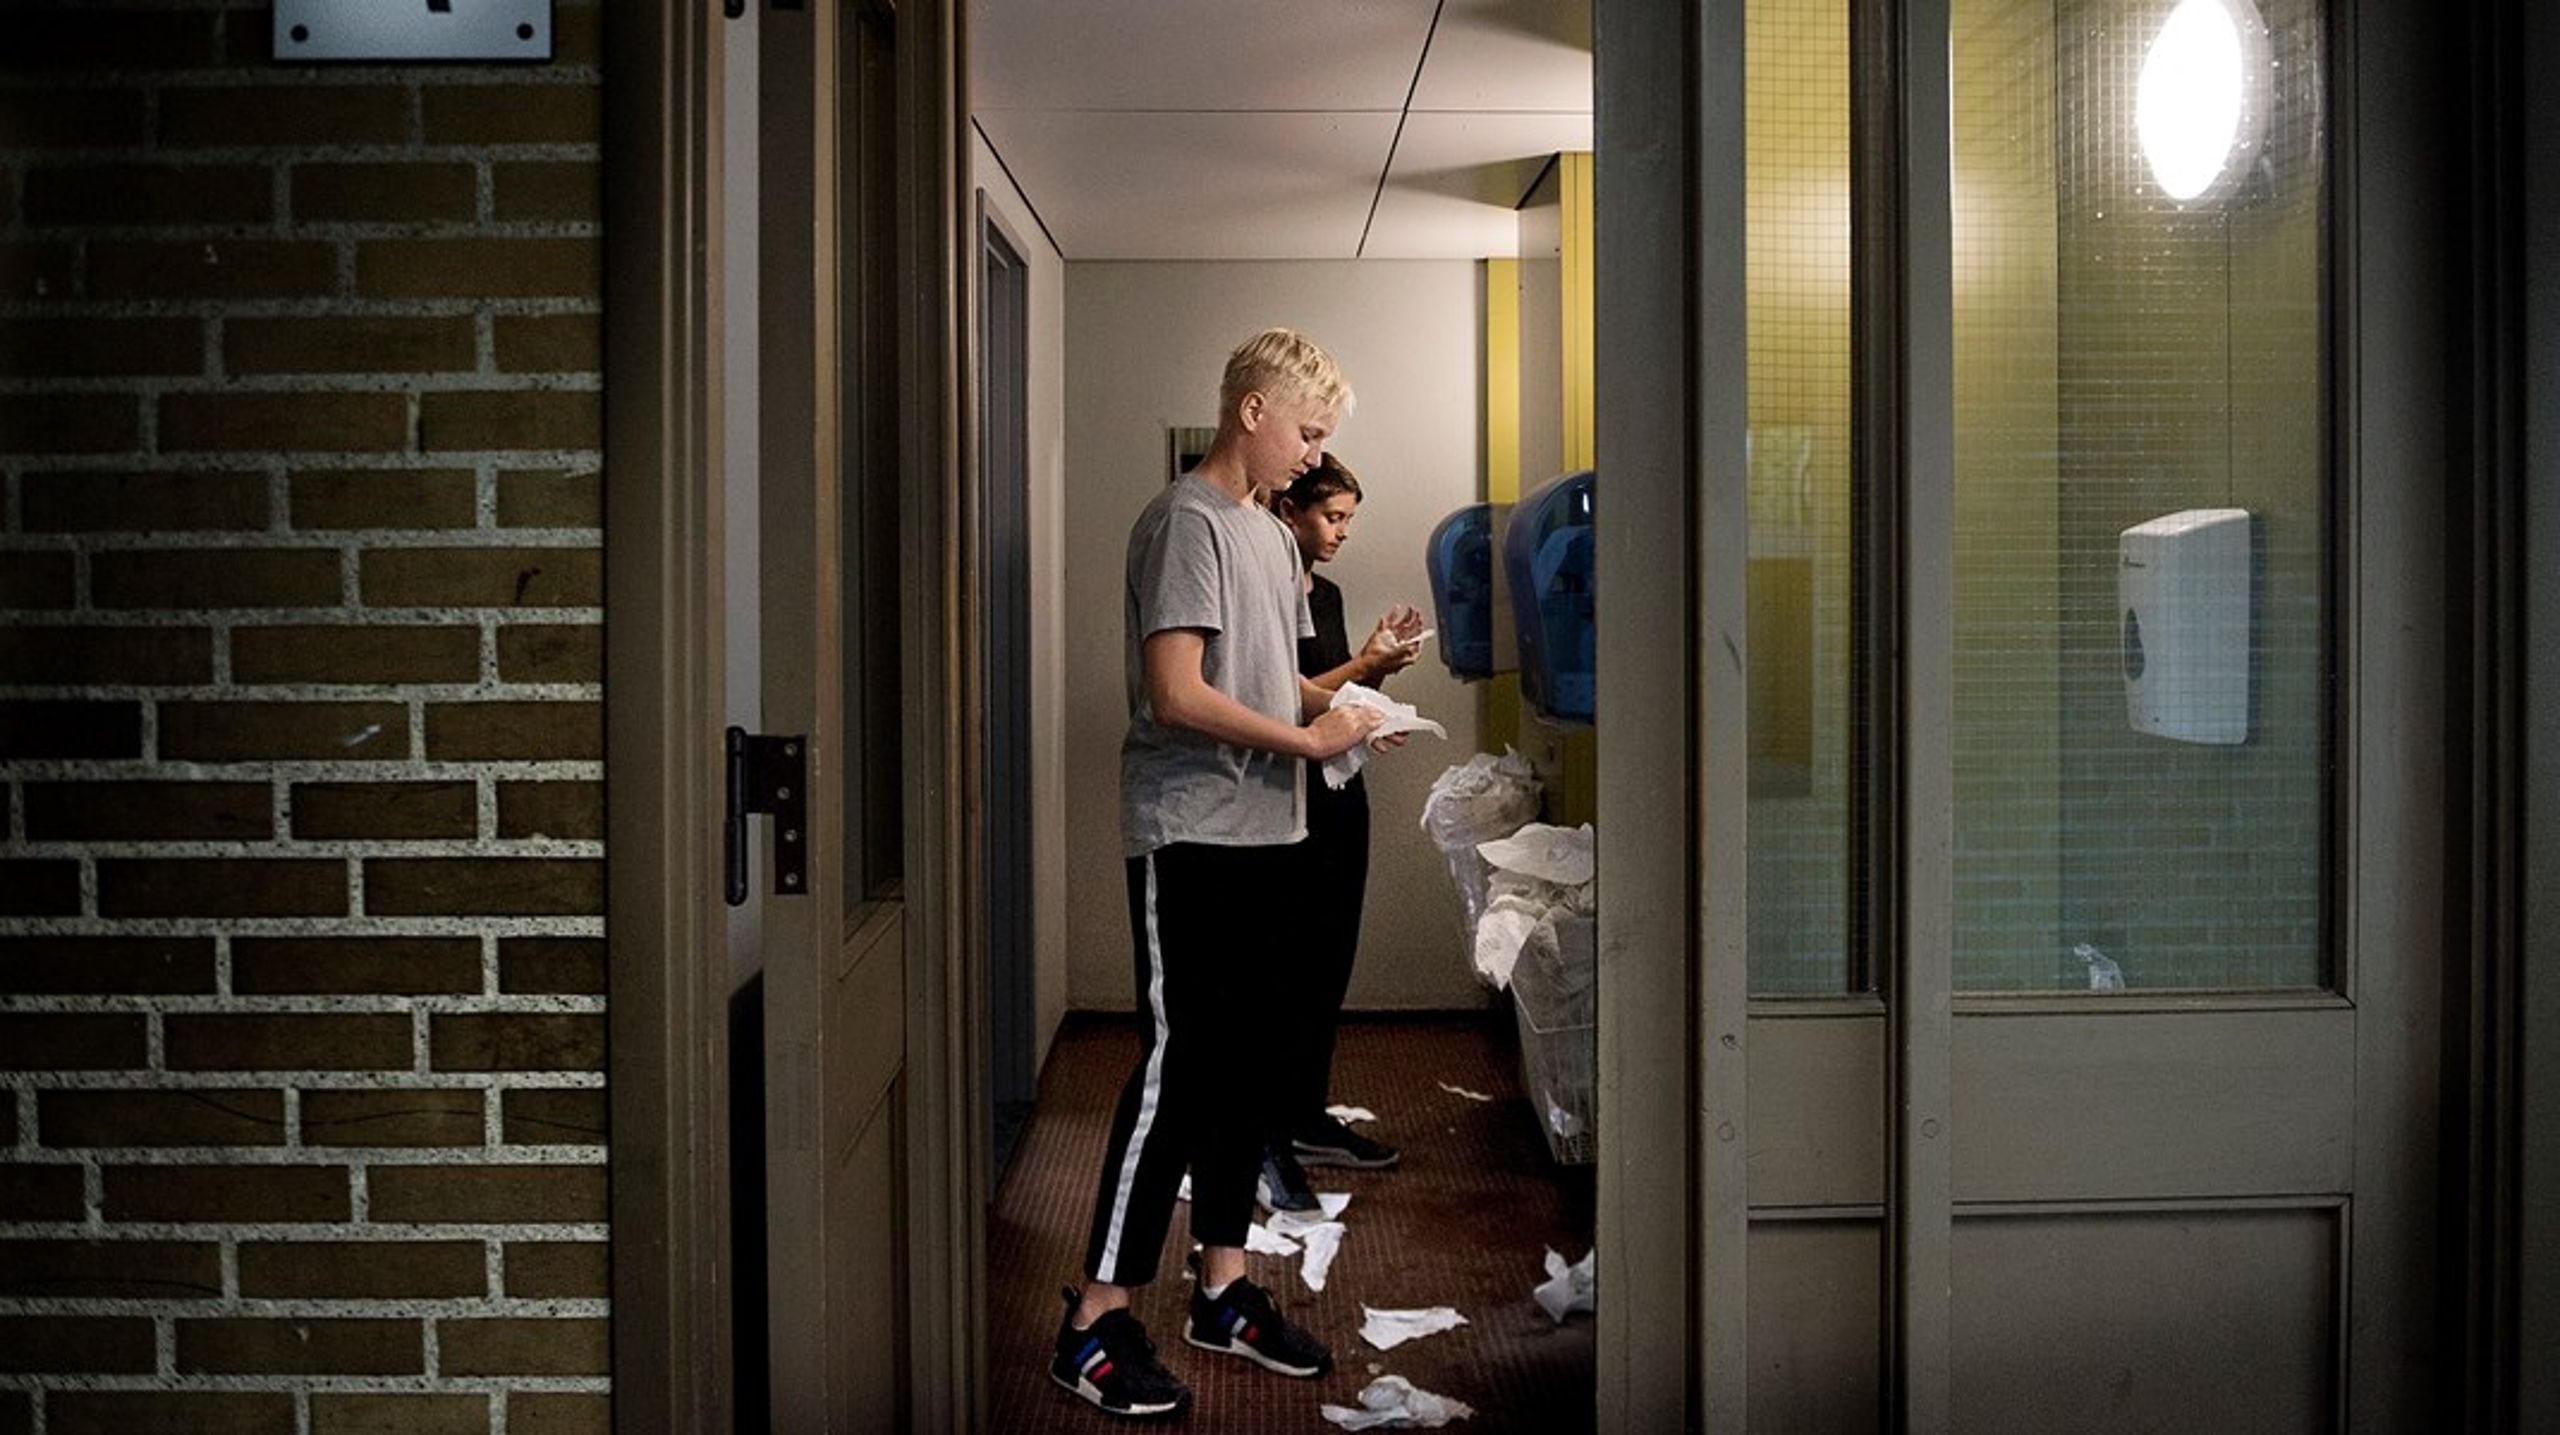 På en af de københavnske skoler, der scorer lavest på trivselsmålingen, er elevernes toiletoplevelser markant forbedret ved at undervise eleverne i god toiletadfærd, så toiletterne fremstår rene og pæne hele skoledagen, skriver&nbsp;Jakob Næsager.&nbsp;